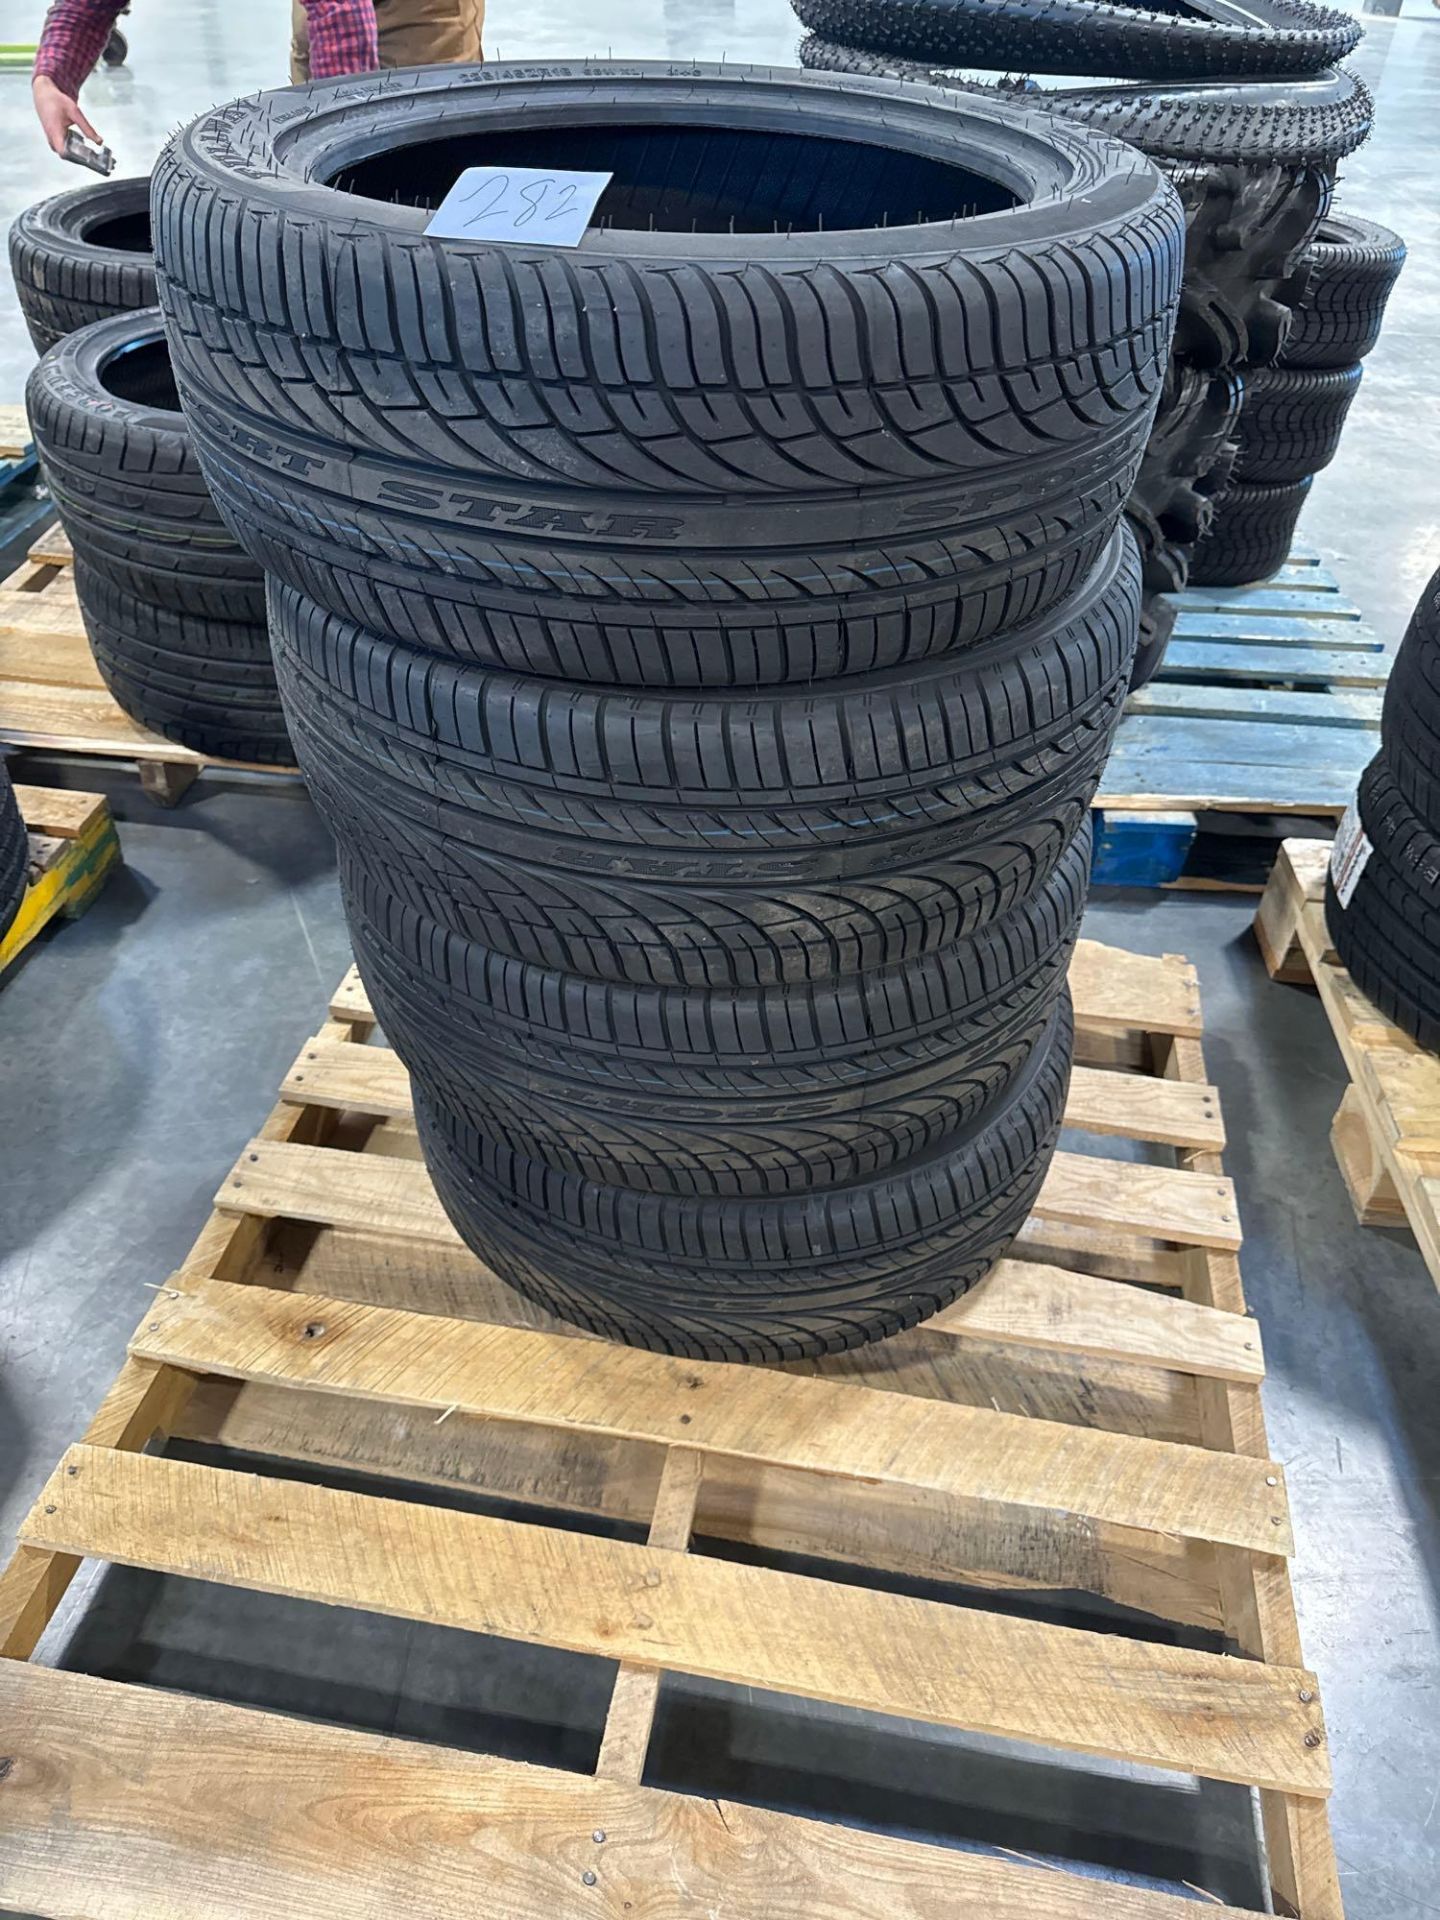 four full -way sportstar tires